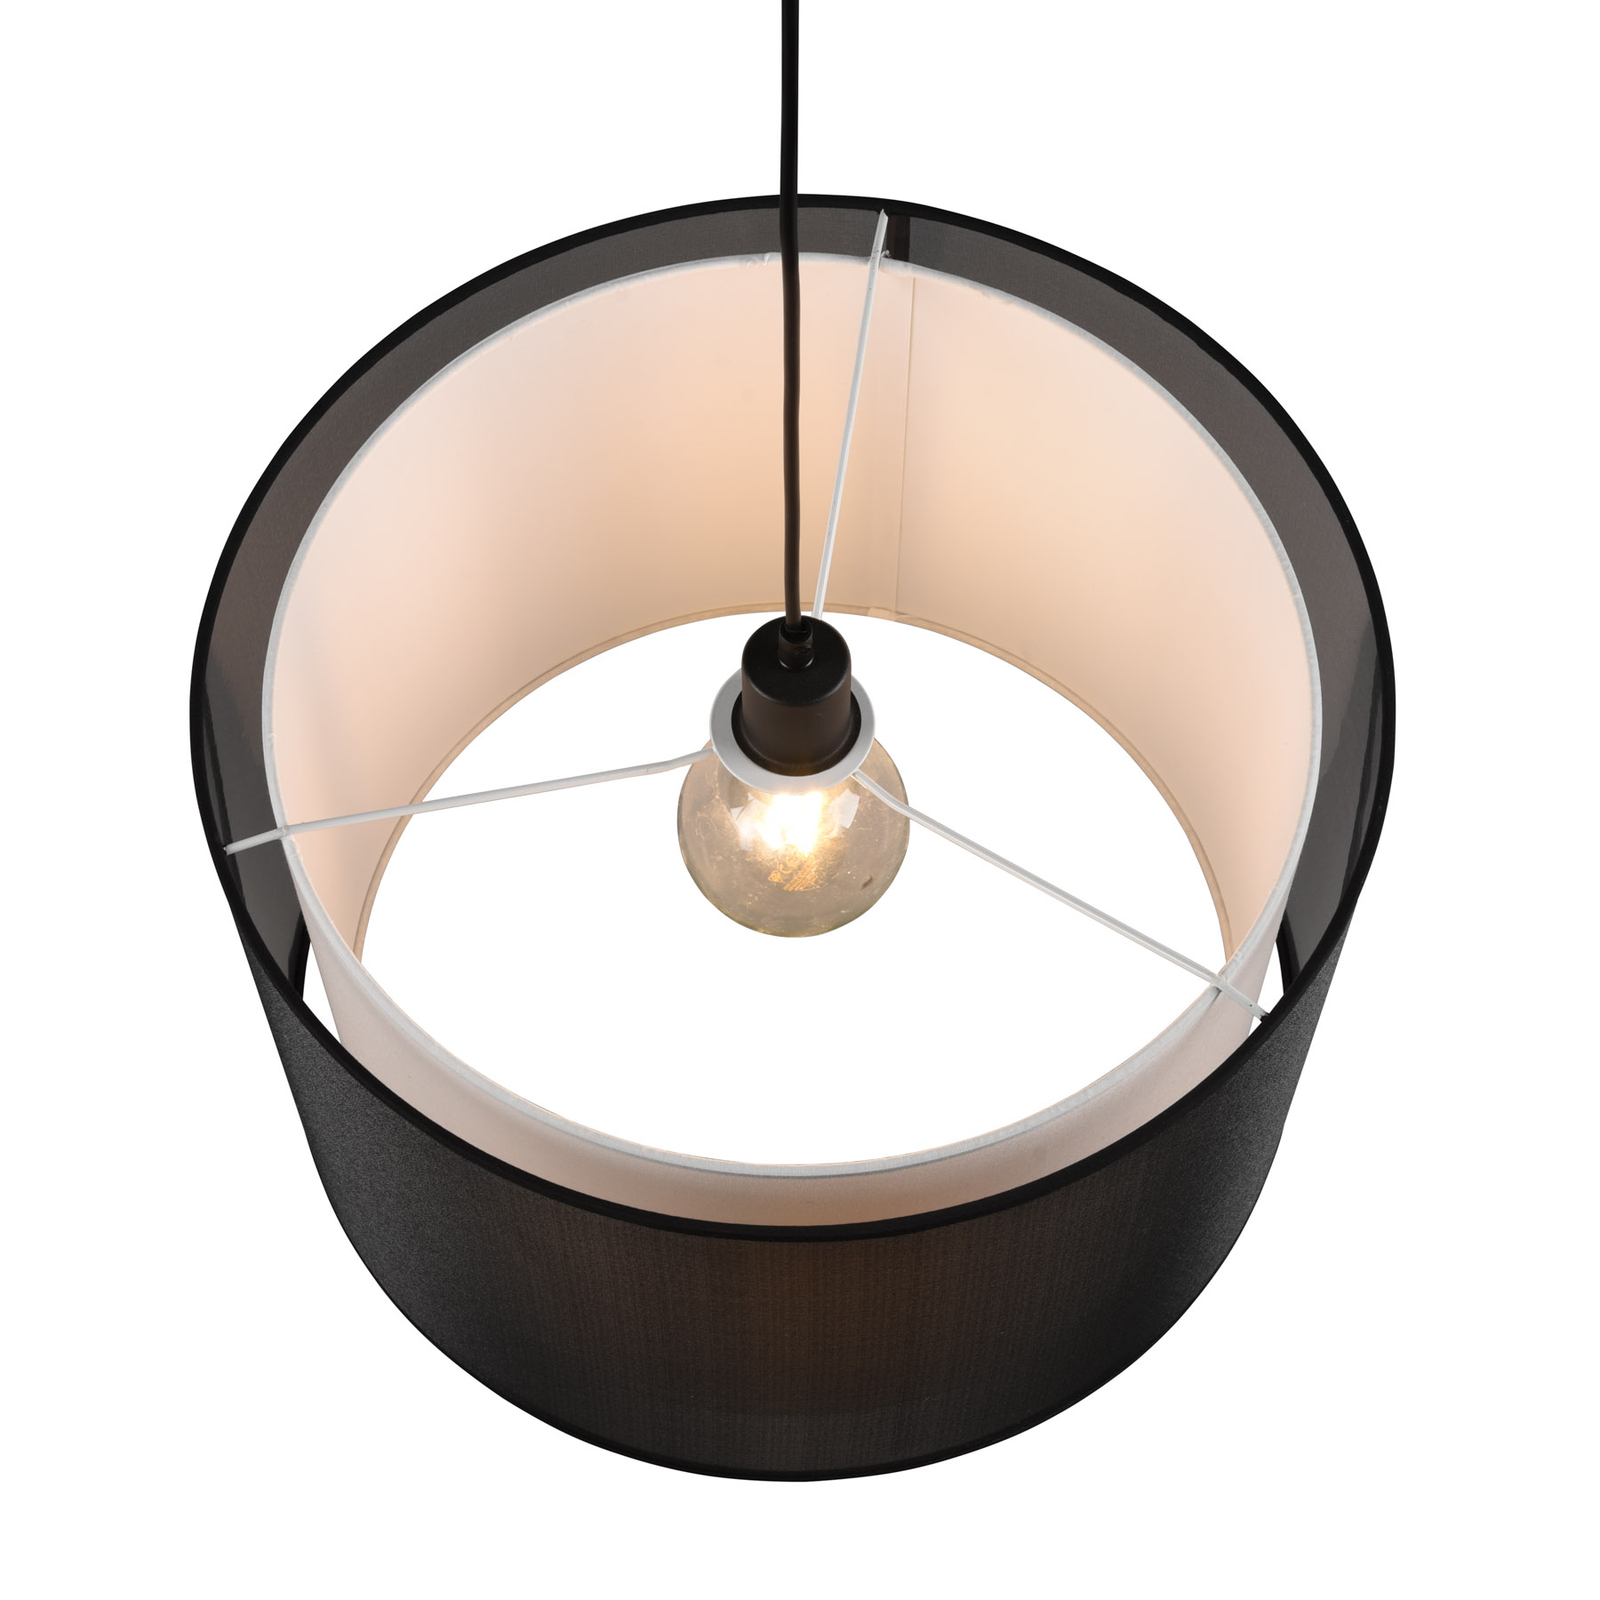 Burton hanglamp, Ø 45 cm, 1-lamp